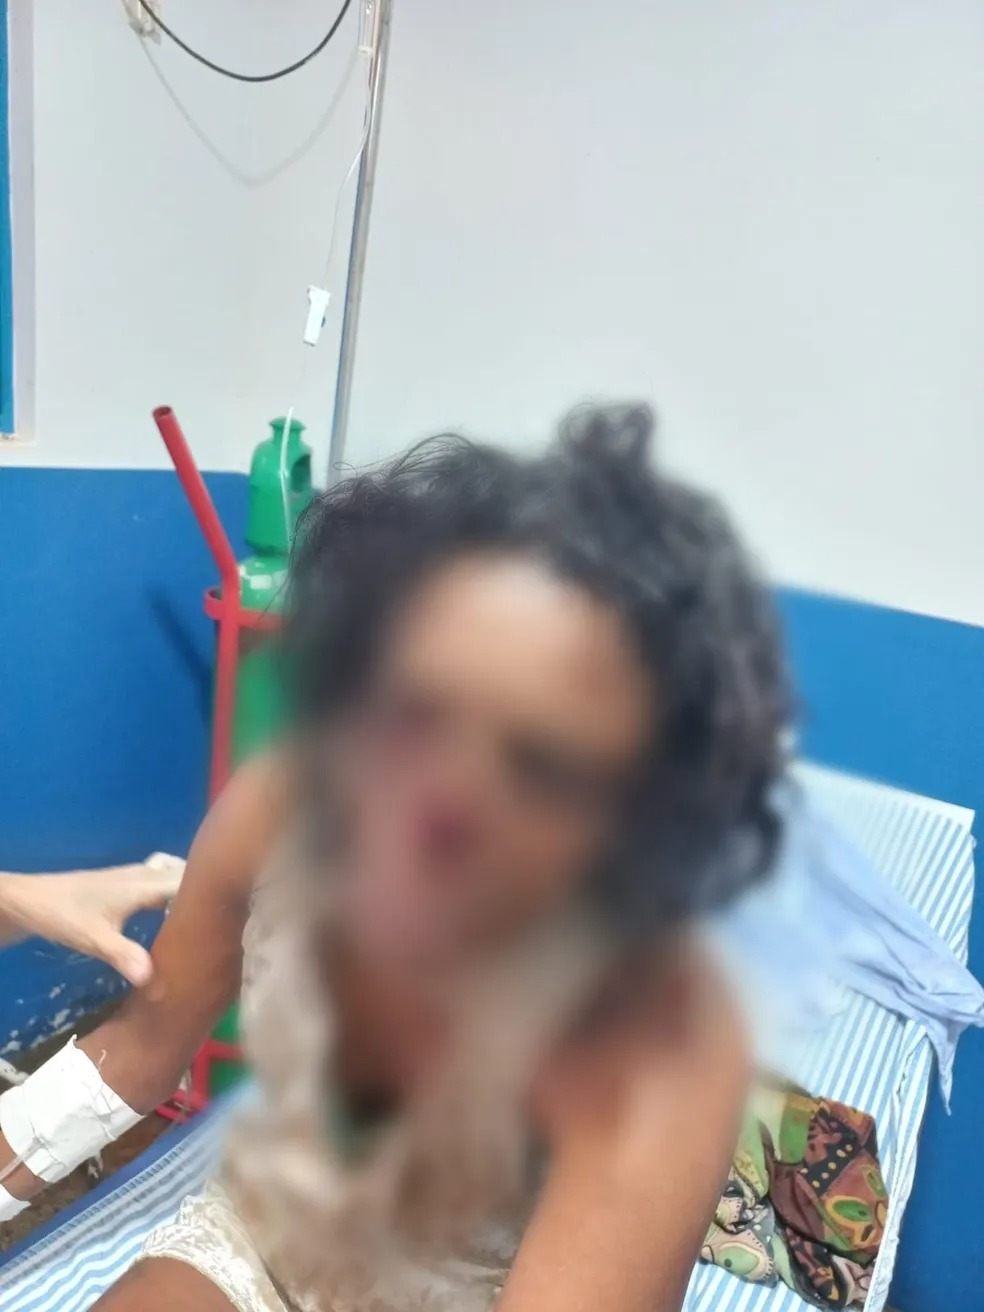 Absurdo! Marido arranca nariz da esposa com mordida durante briga em Colméia